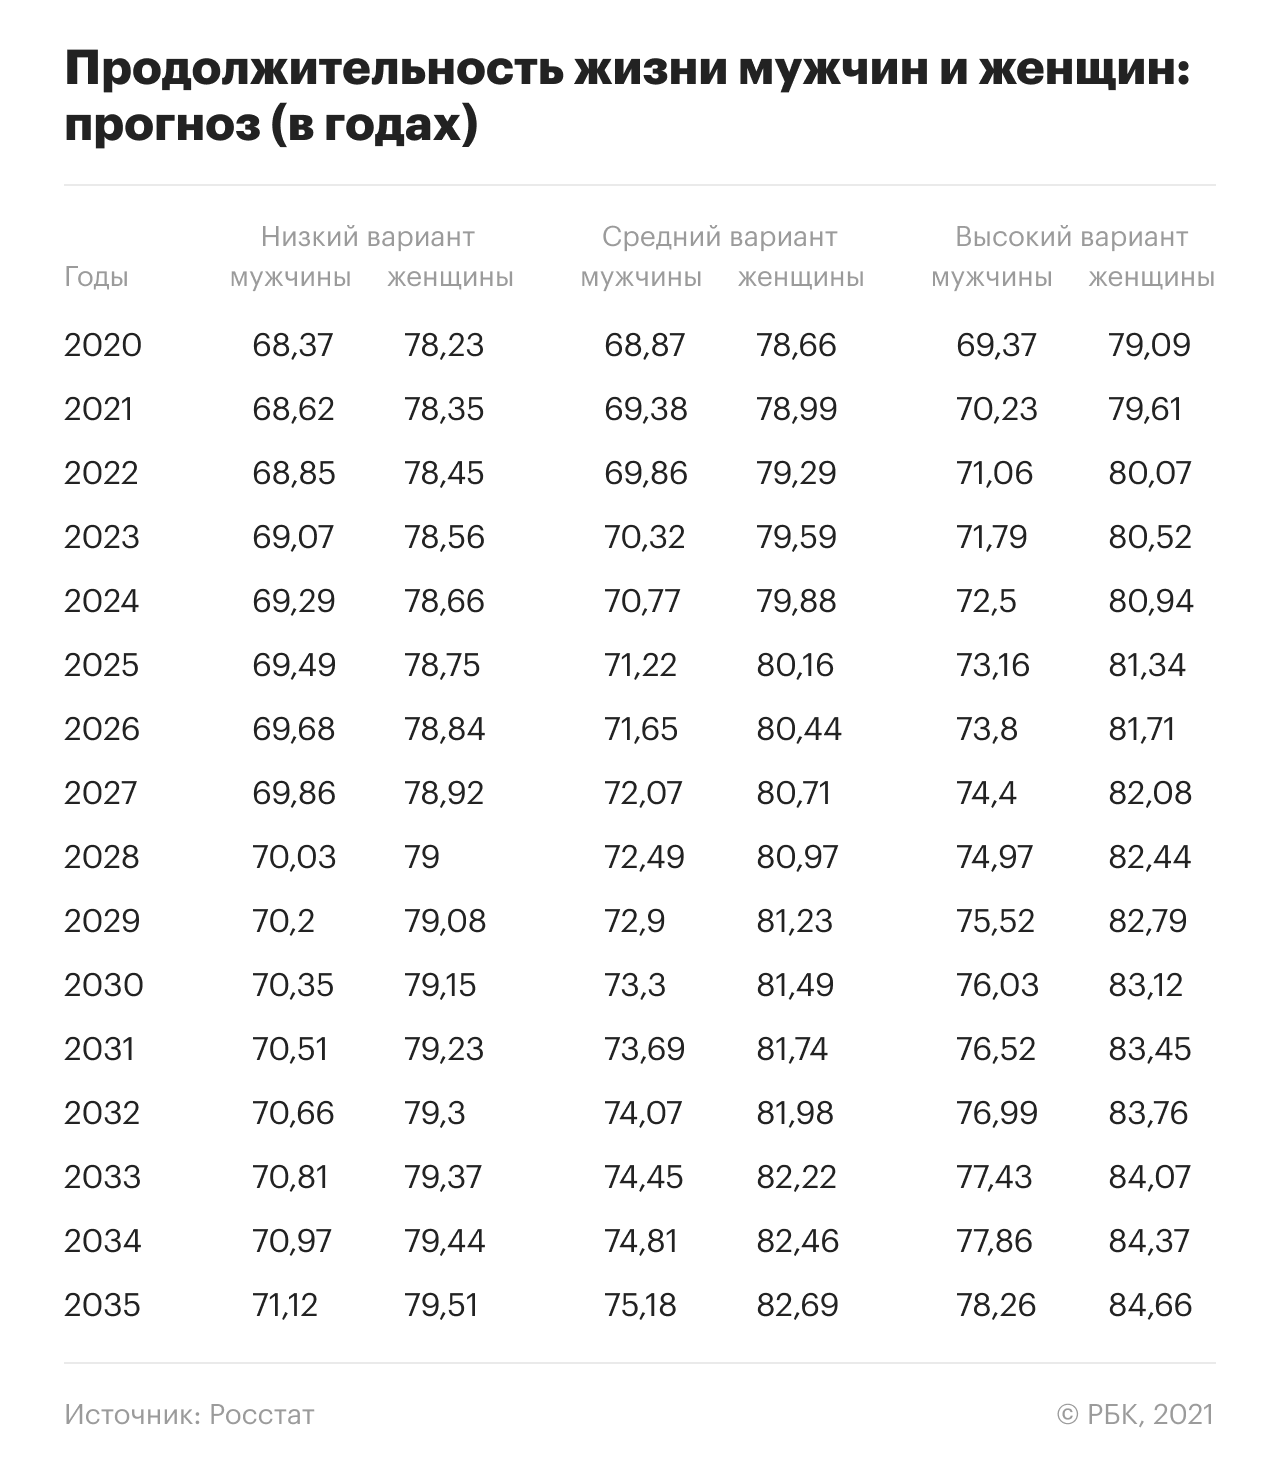 Даже по самым оптимистичным прогнозам российские мужчины в 2035 году по продолжительности жизни будут &laquo;отставать&raquo; от женщин на шесть лет